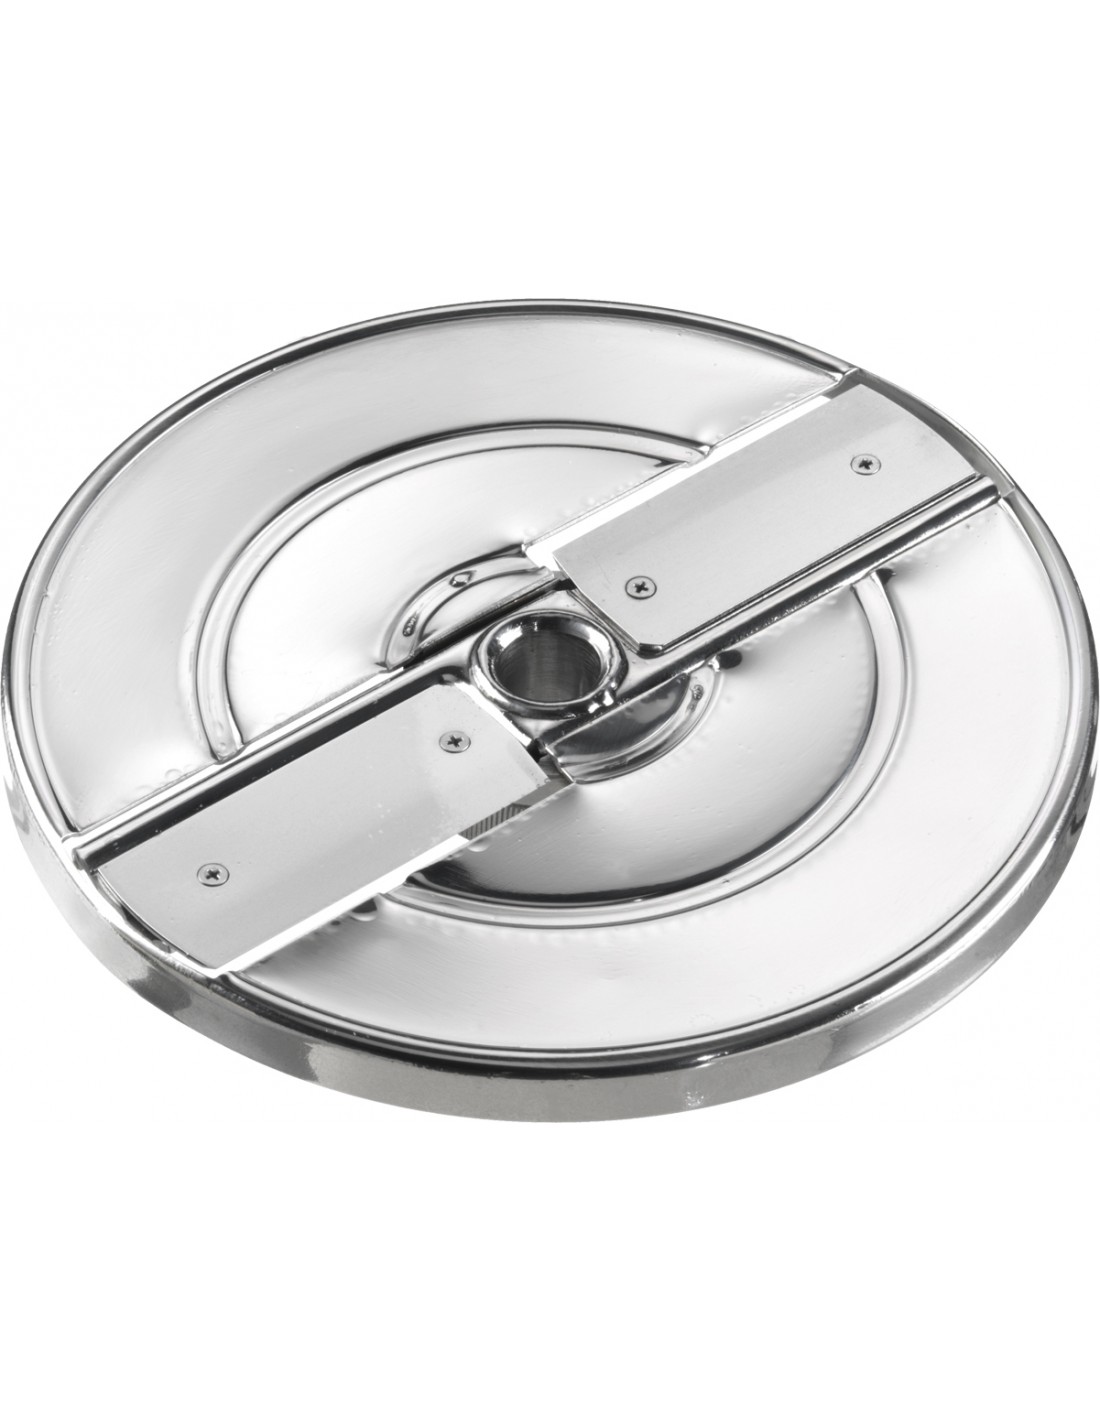 Disco de corte de acero inoxidable - Ajustable para cortes de 1 a 8 mm